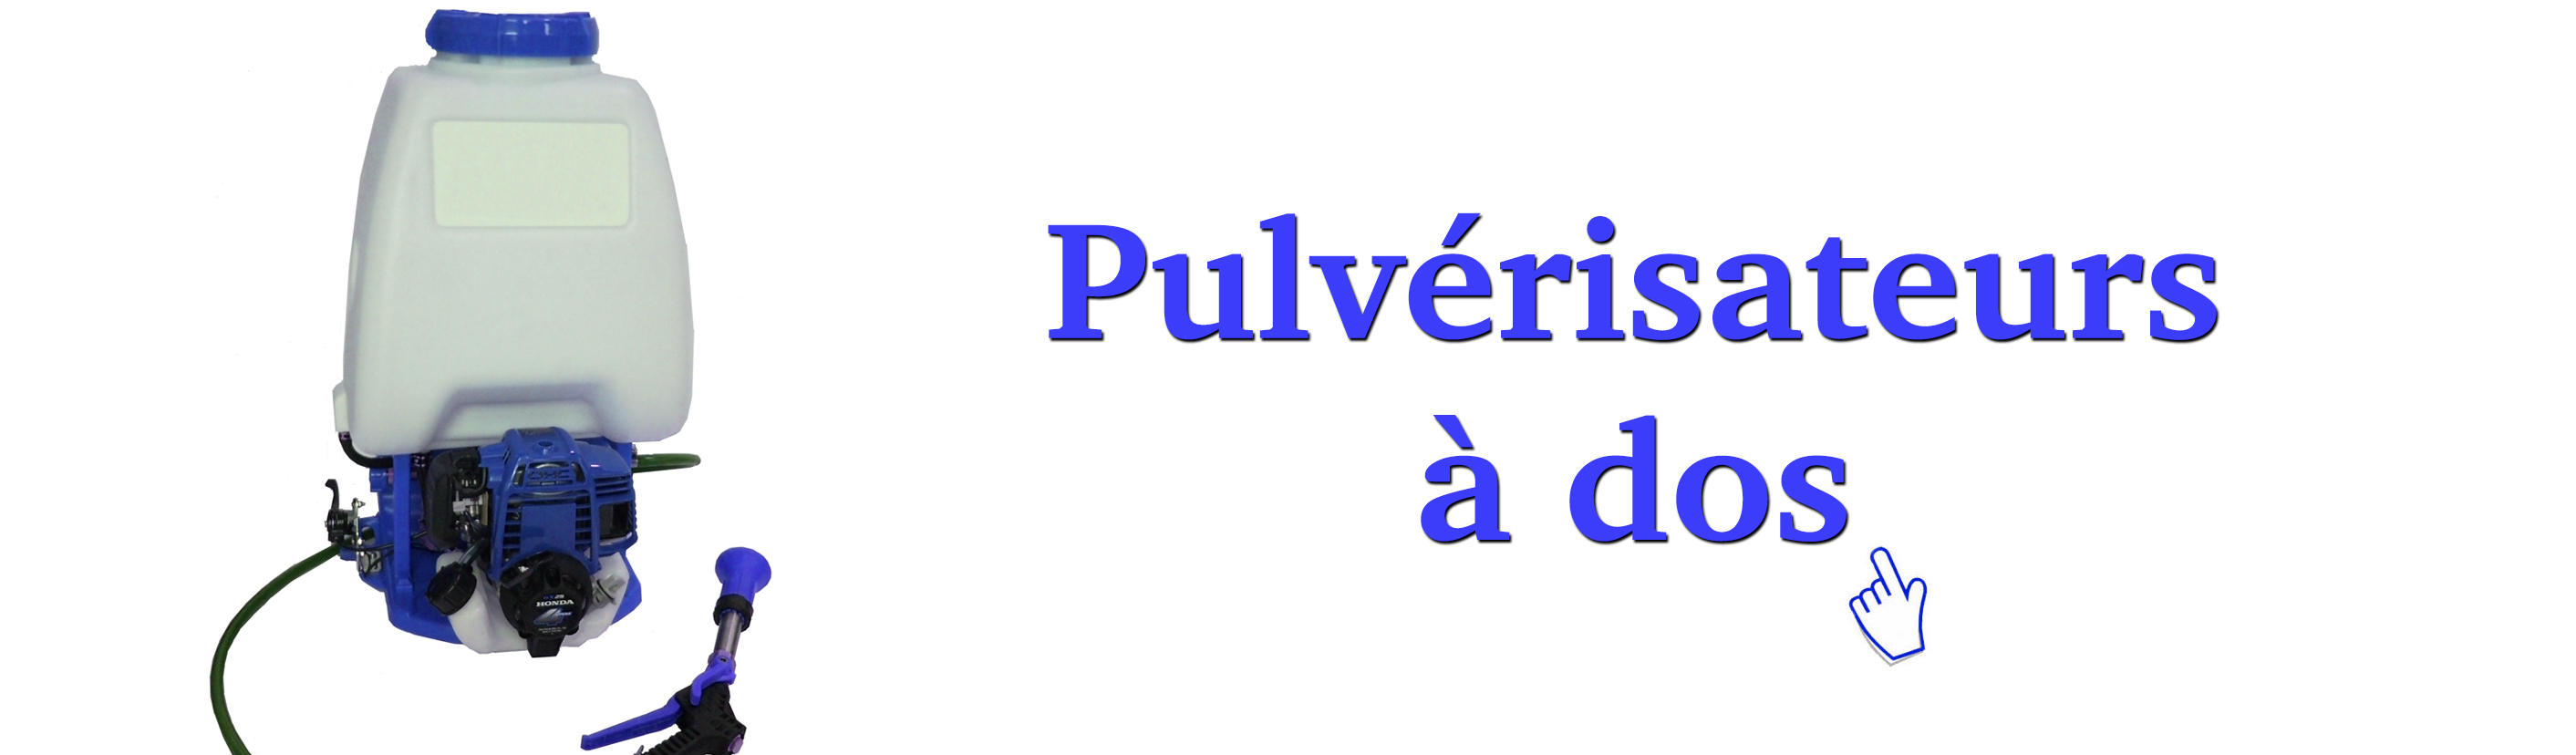 pulsfog-france-categorie-de-produits-pulverisateurs-a-dos